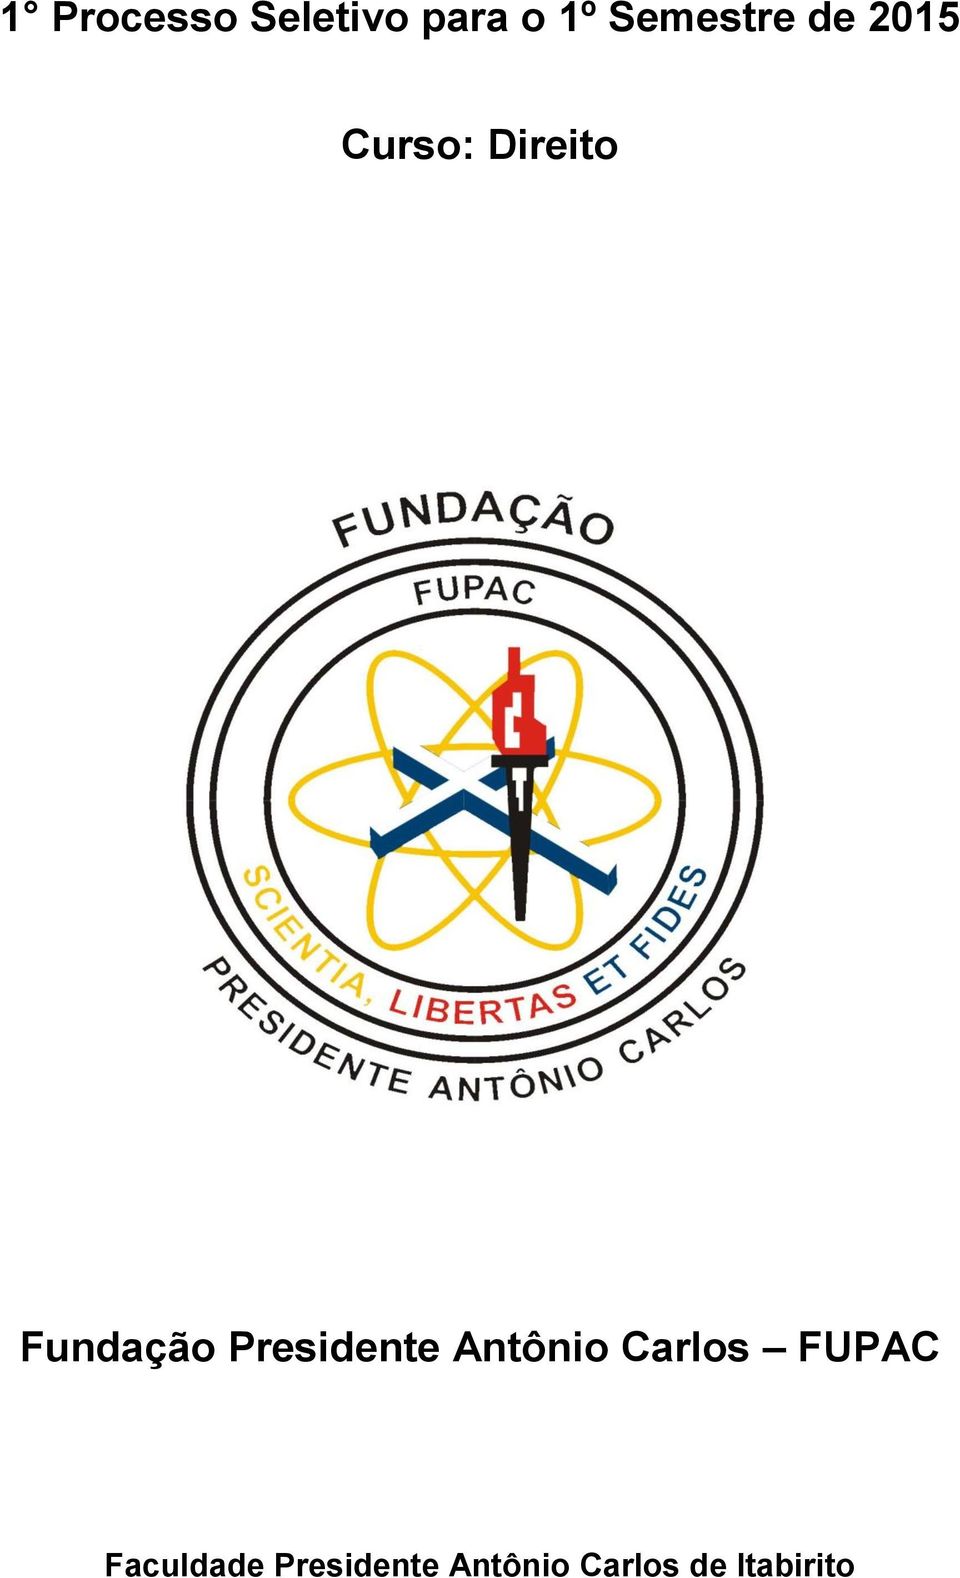 Fundação Presidente Antônio Carlos